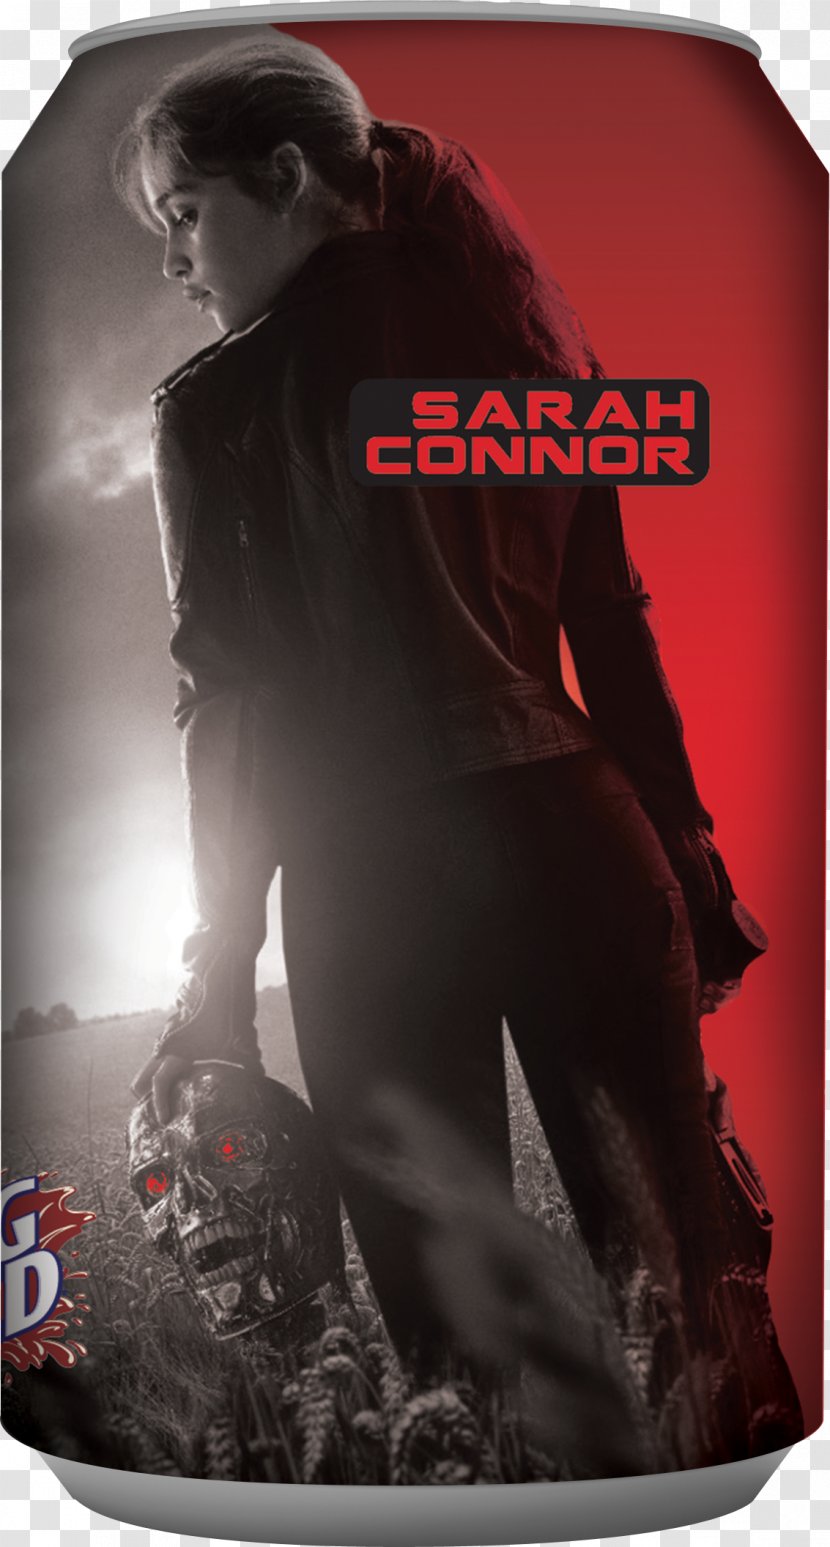 Sarah Connor Kyle Reese John Film The Terminator - RoboCop Versus Transparent PNG